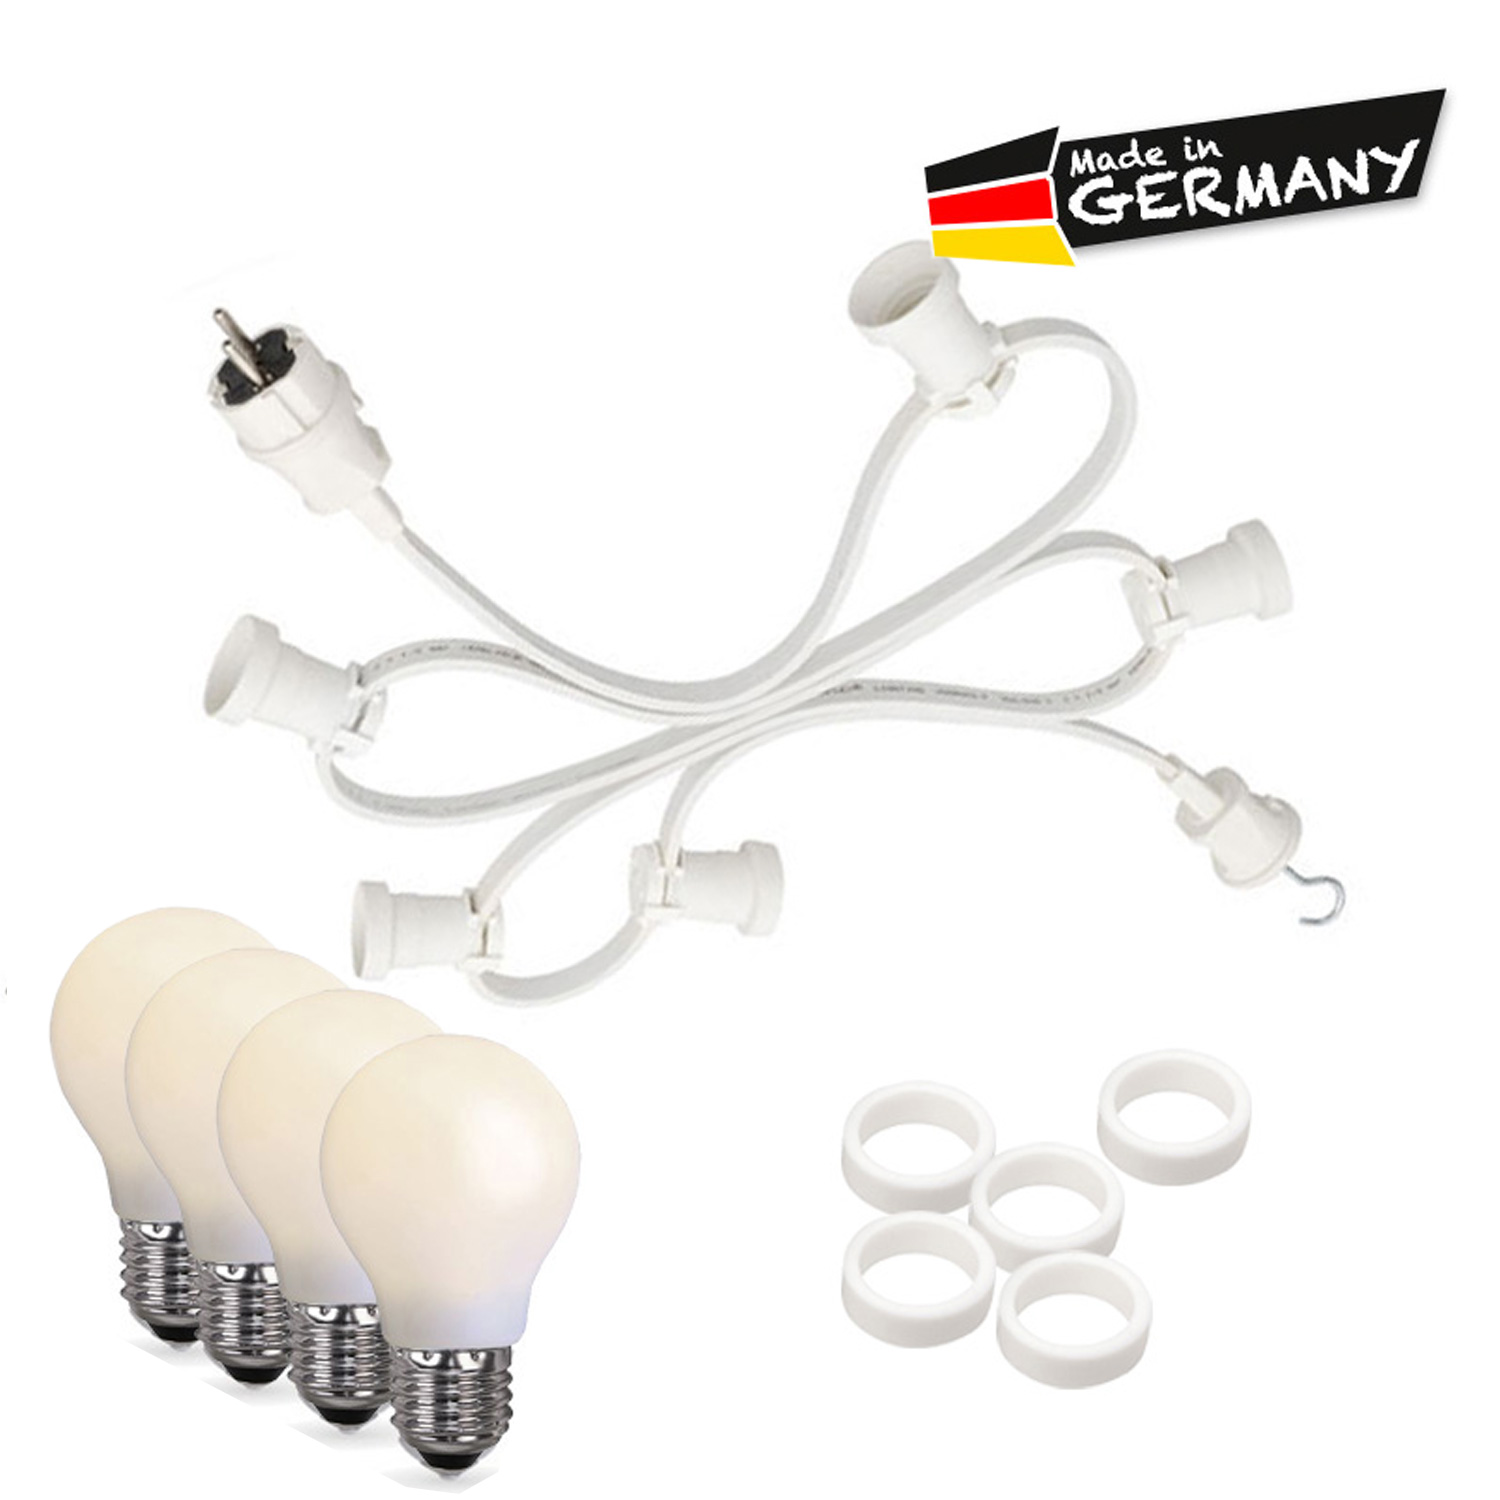 Illu-/Partylichterkette 20m - Außen - Made in Germany - 20 bruchfeste opale LED Tropfenlampen